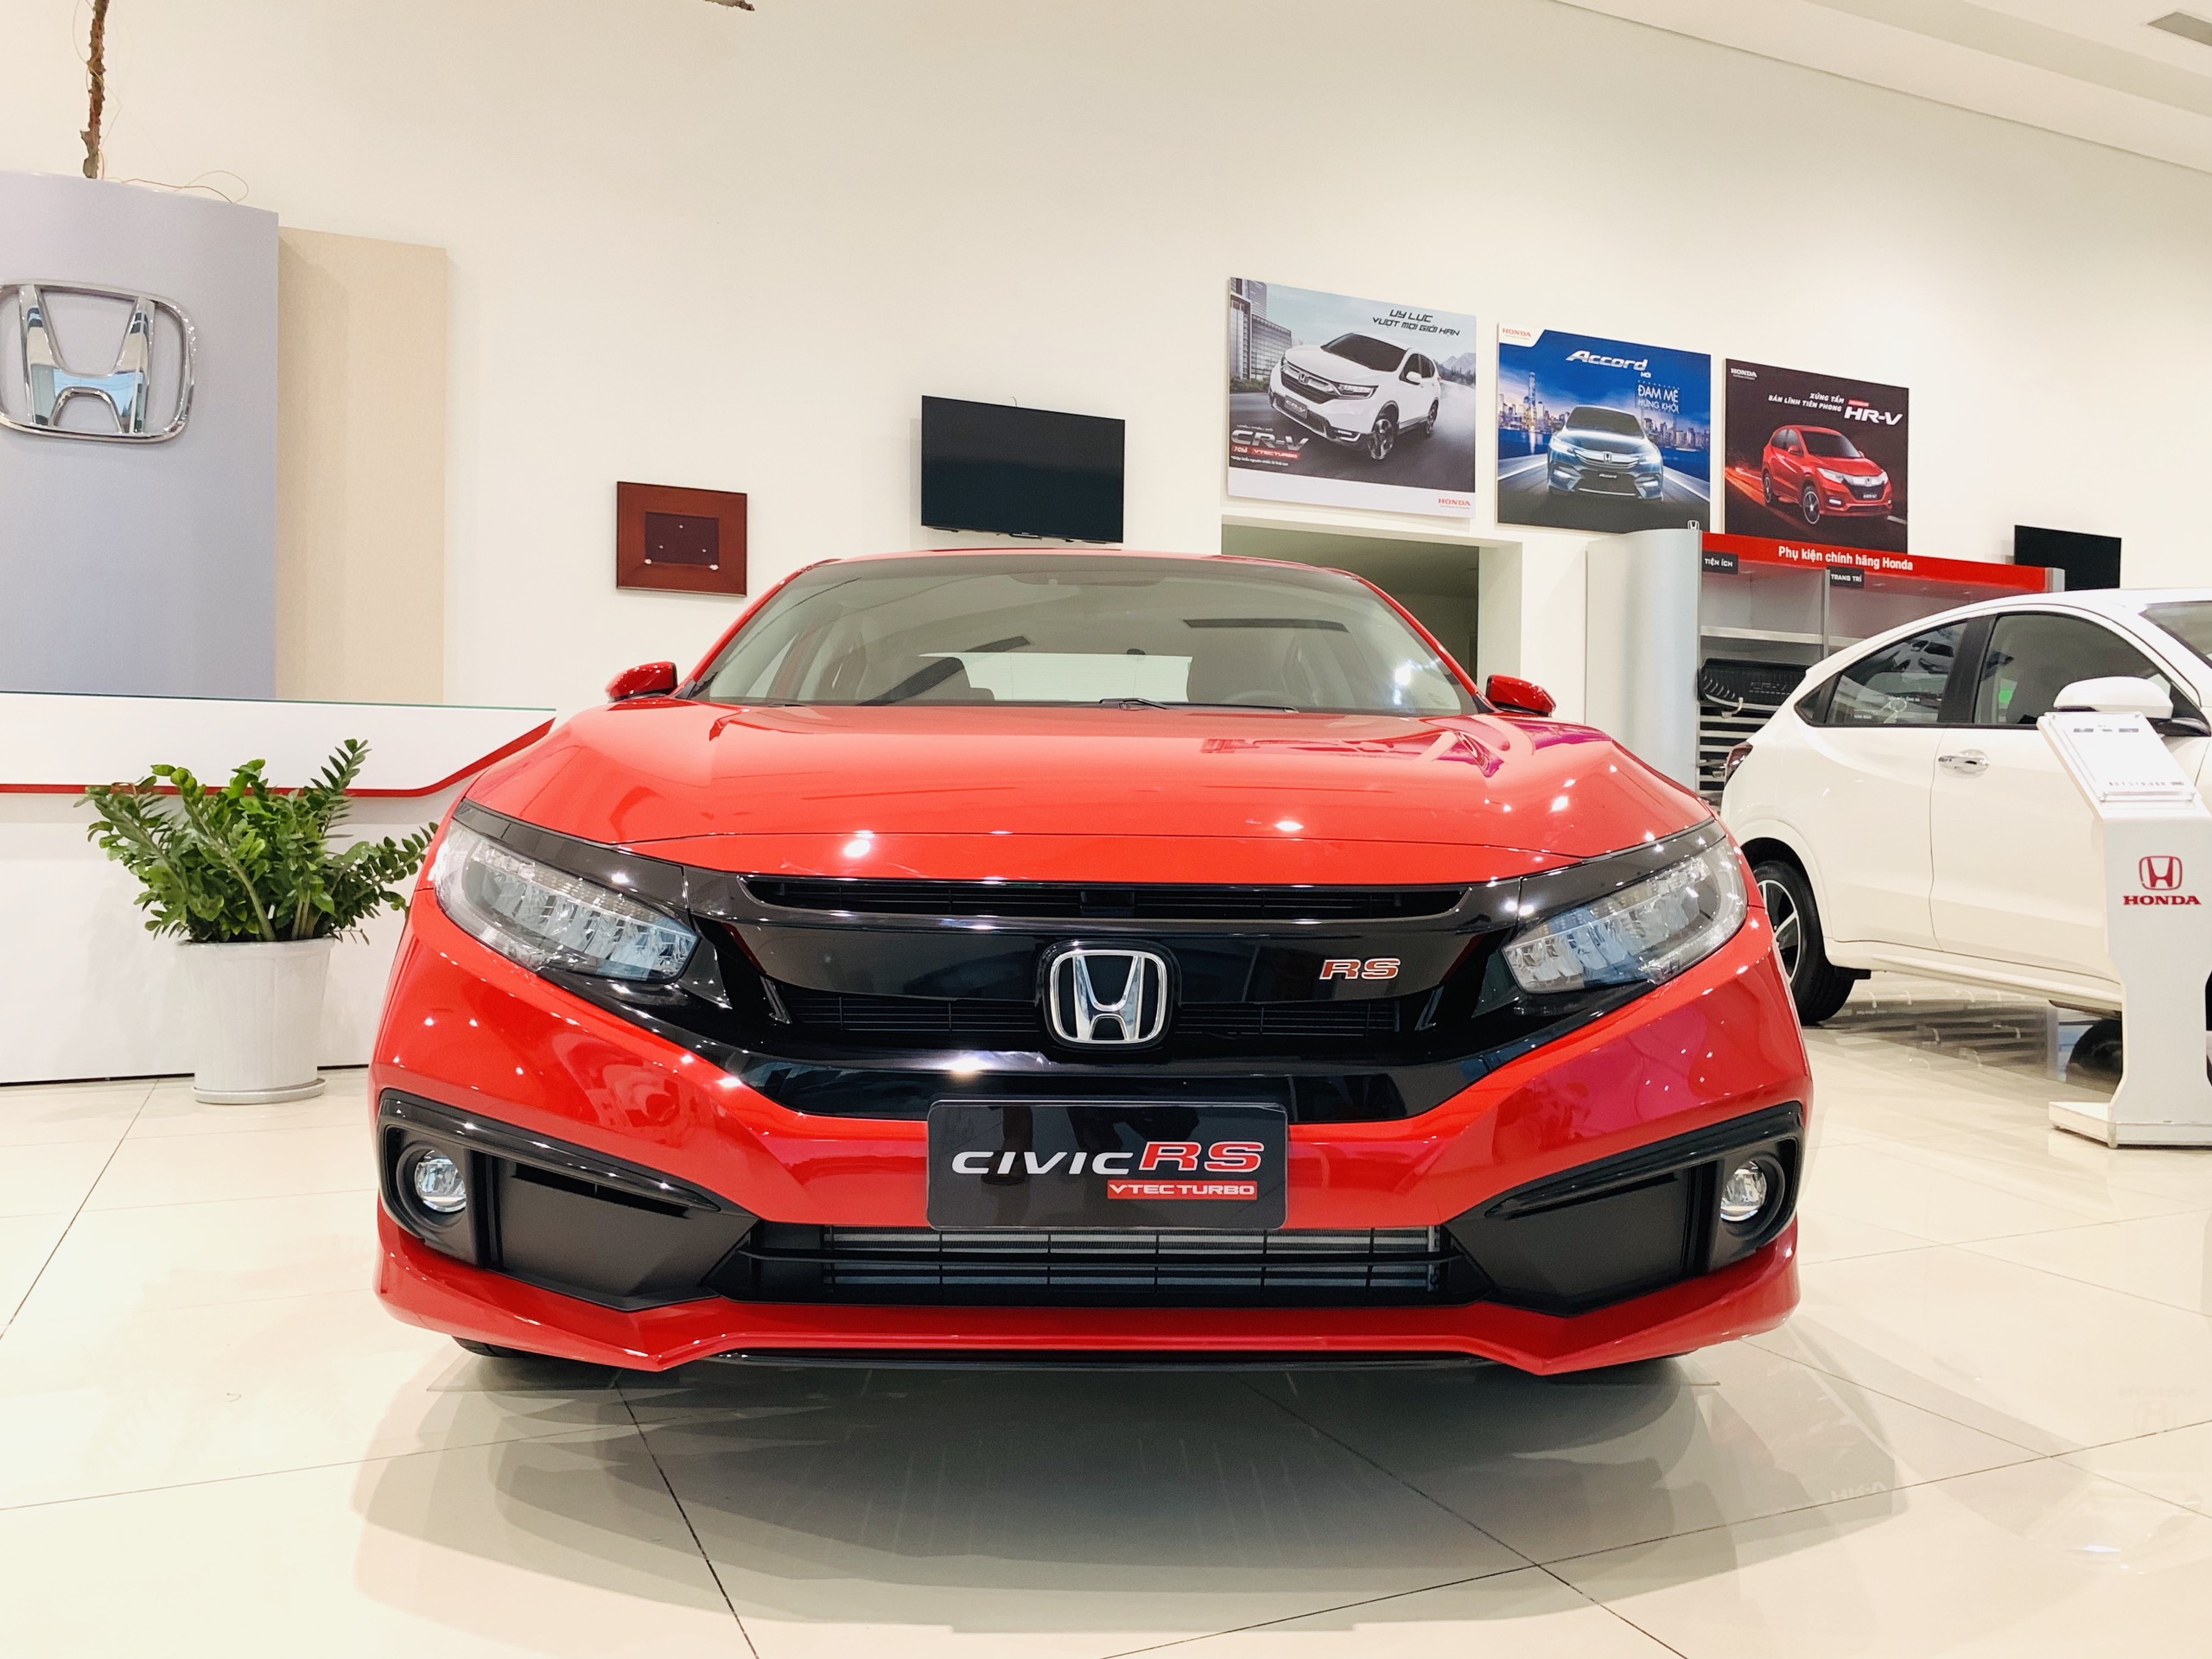 Honda Civic RS 2020: Bản nâng cấp đáng giá